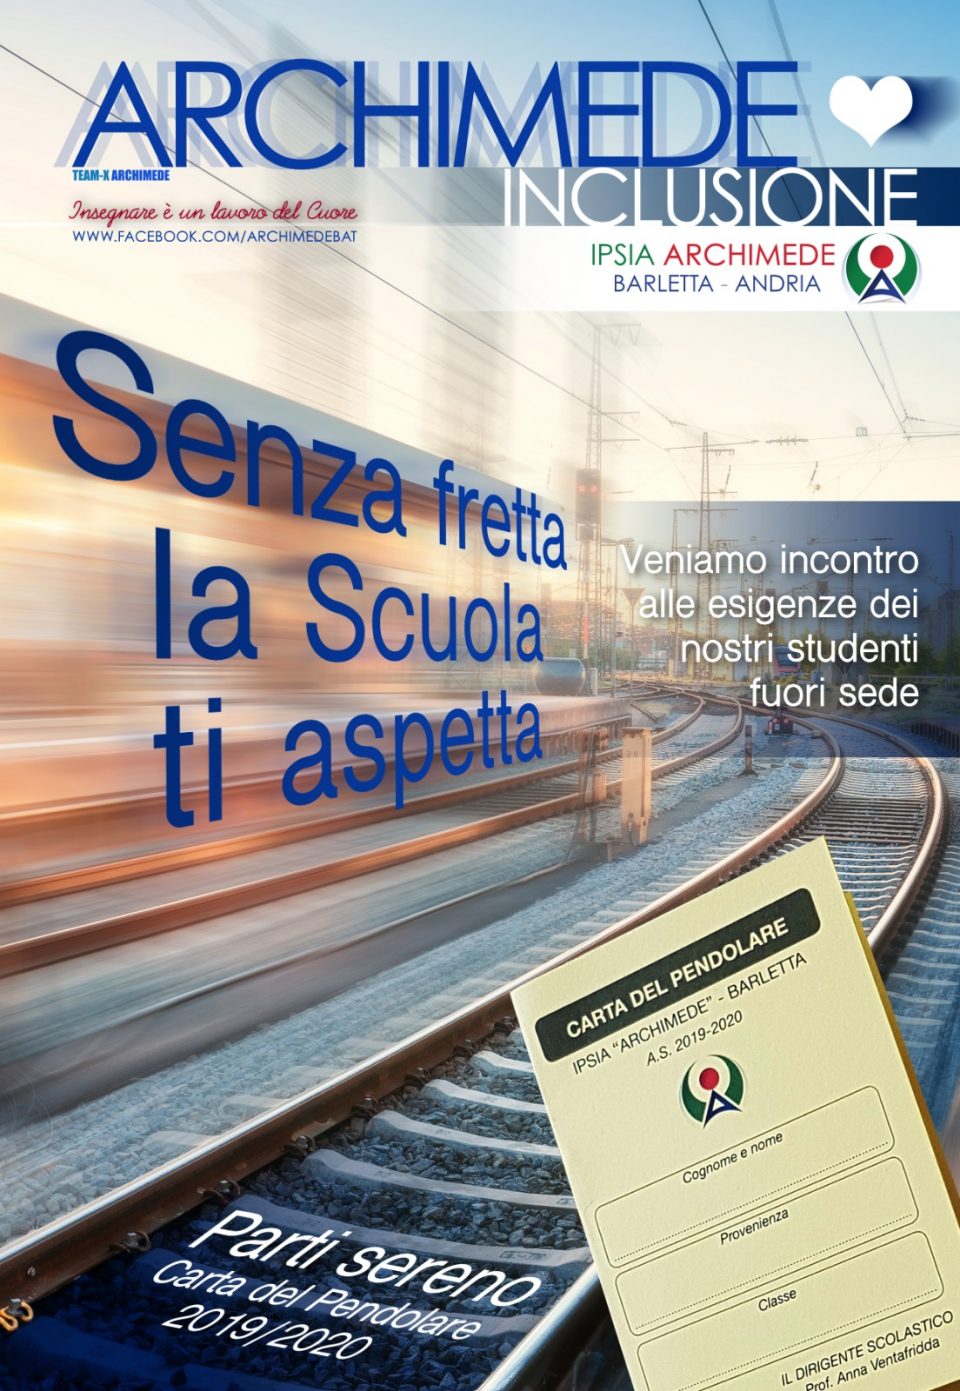 IPSIA ARCHIMEDE BARLETTA Comprendere le problematiche dei pendolari e le risolve con la carta del pendolare.